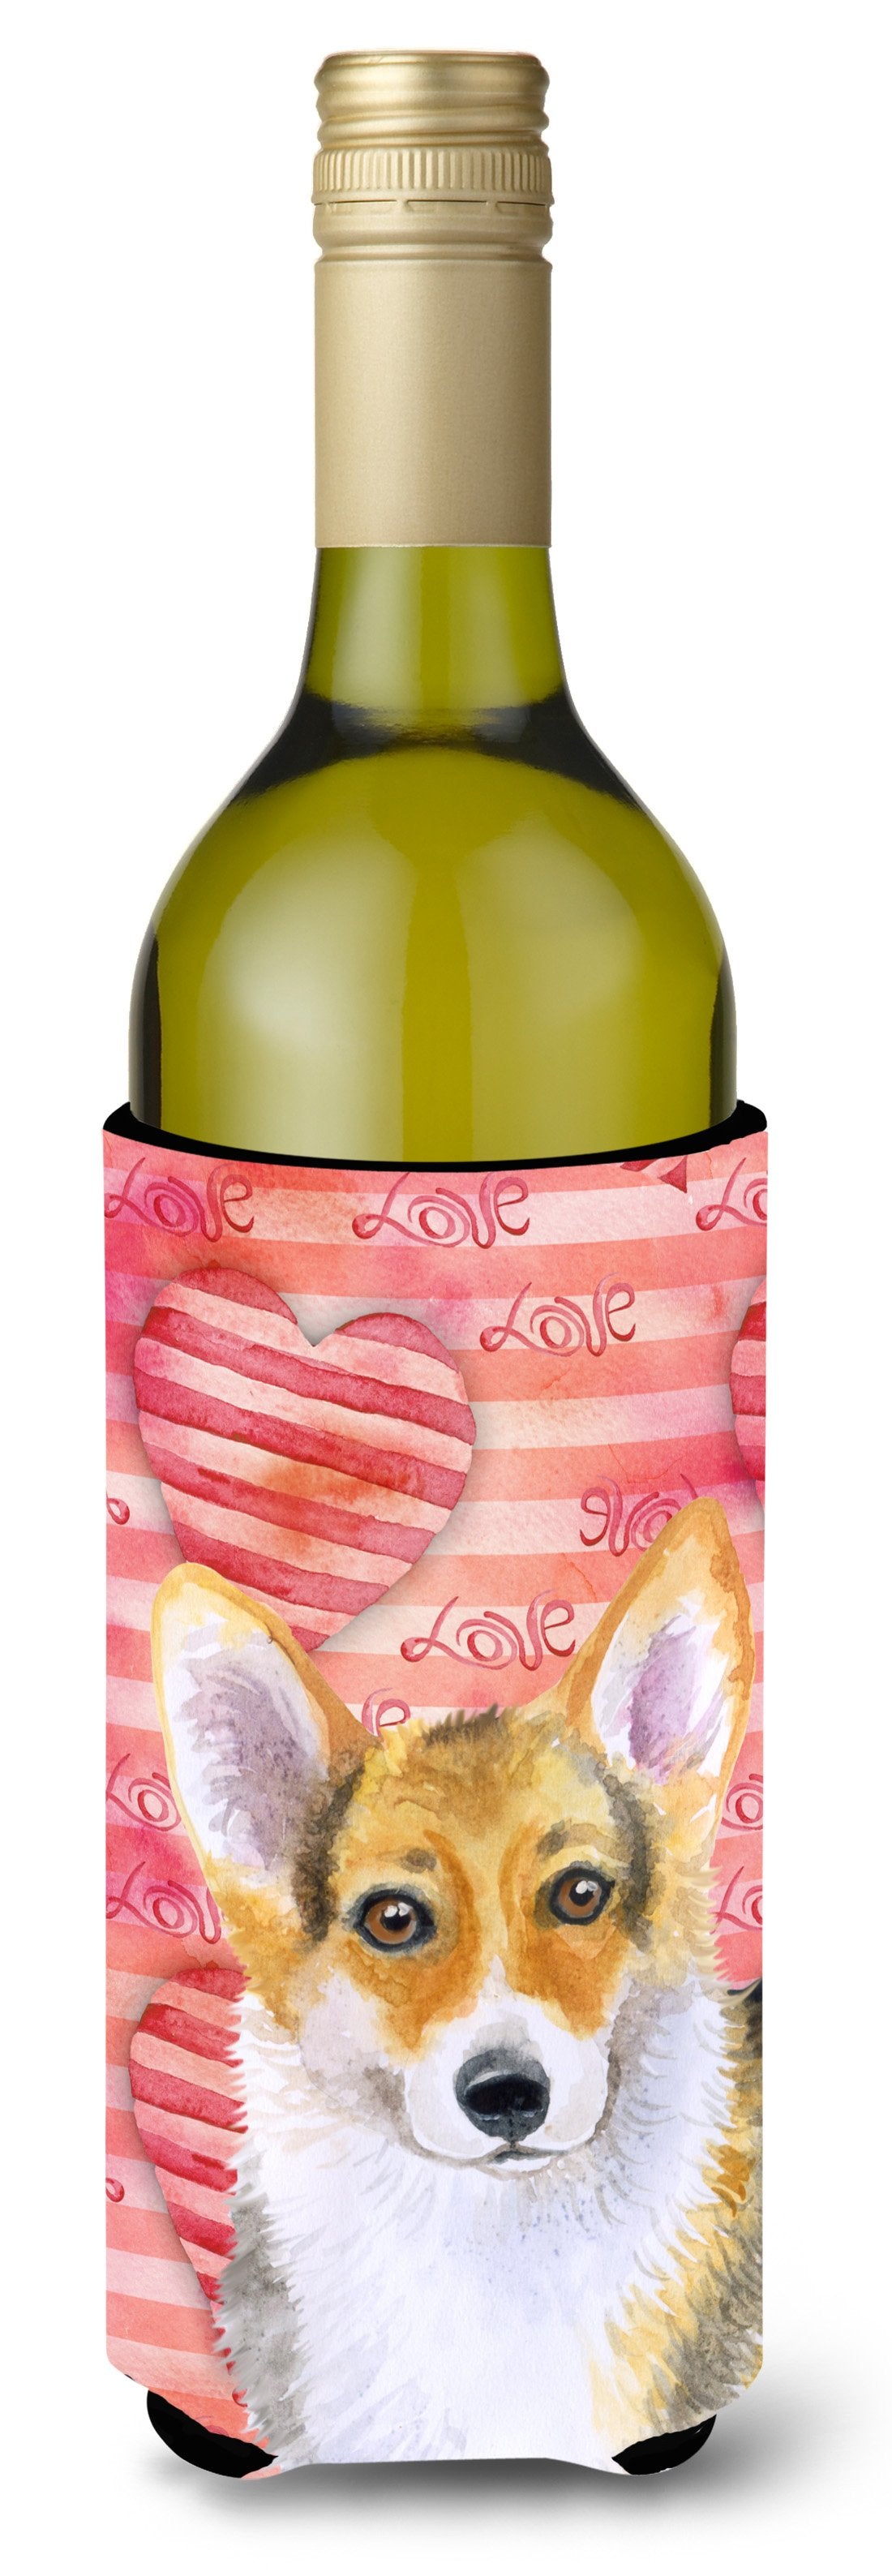 Pembroke Corgi Love Wine Bottle Beverge Insulator Hugger BB9729LITERK by Caroline's Treasures